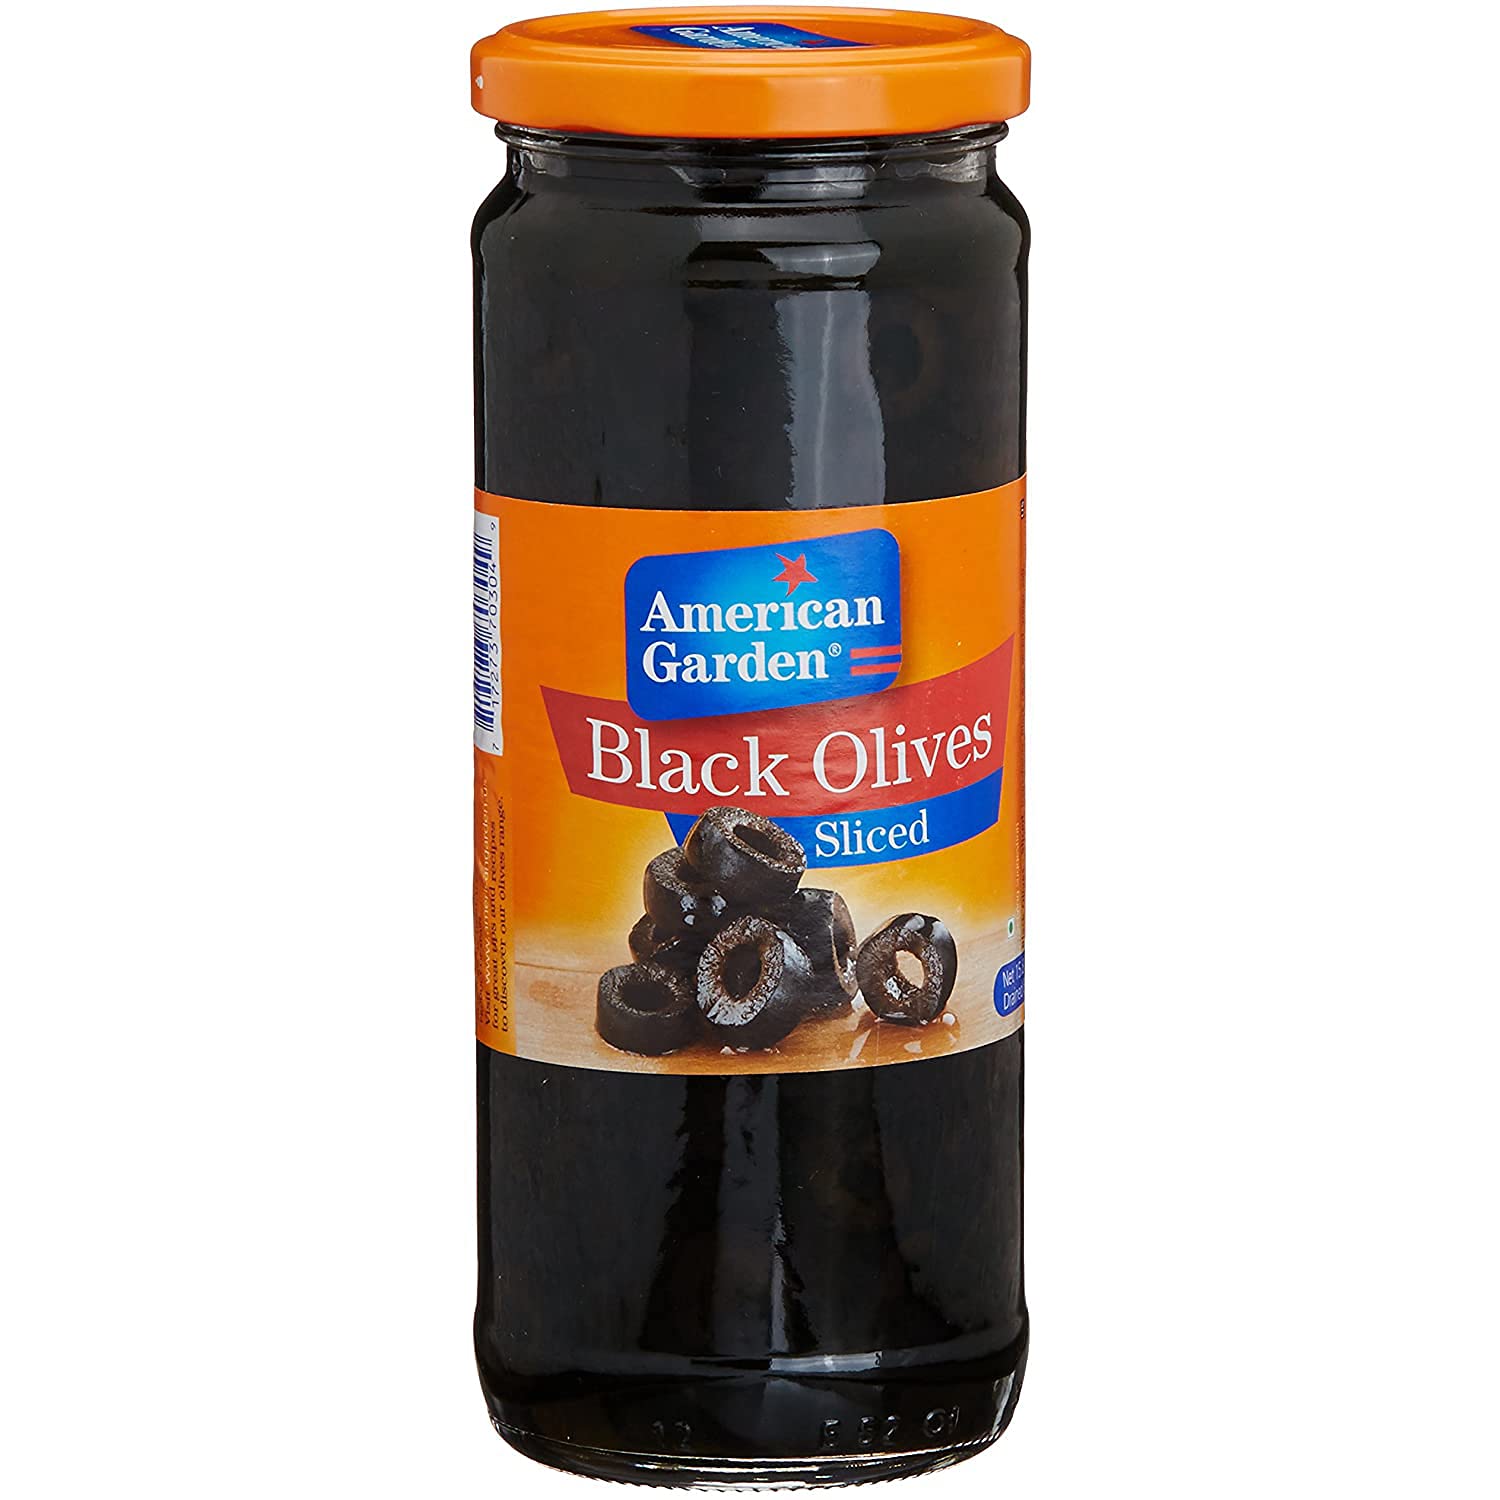 American Garden Black Olives Sliced Image